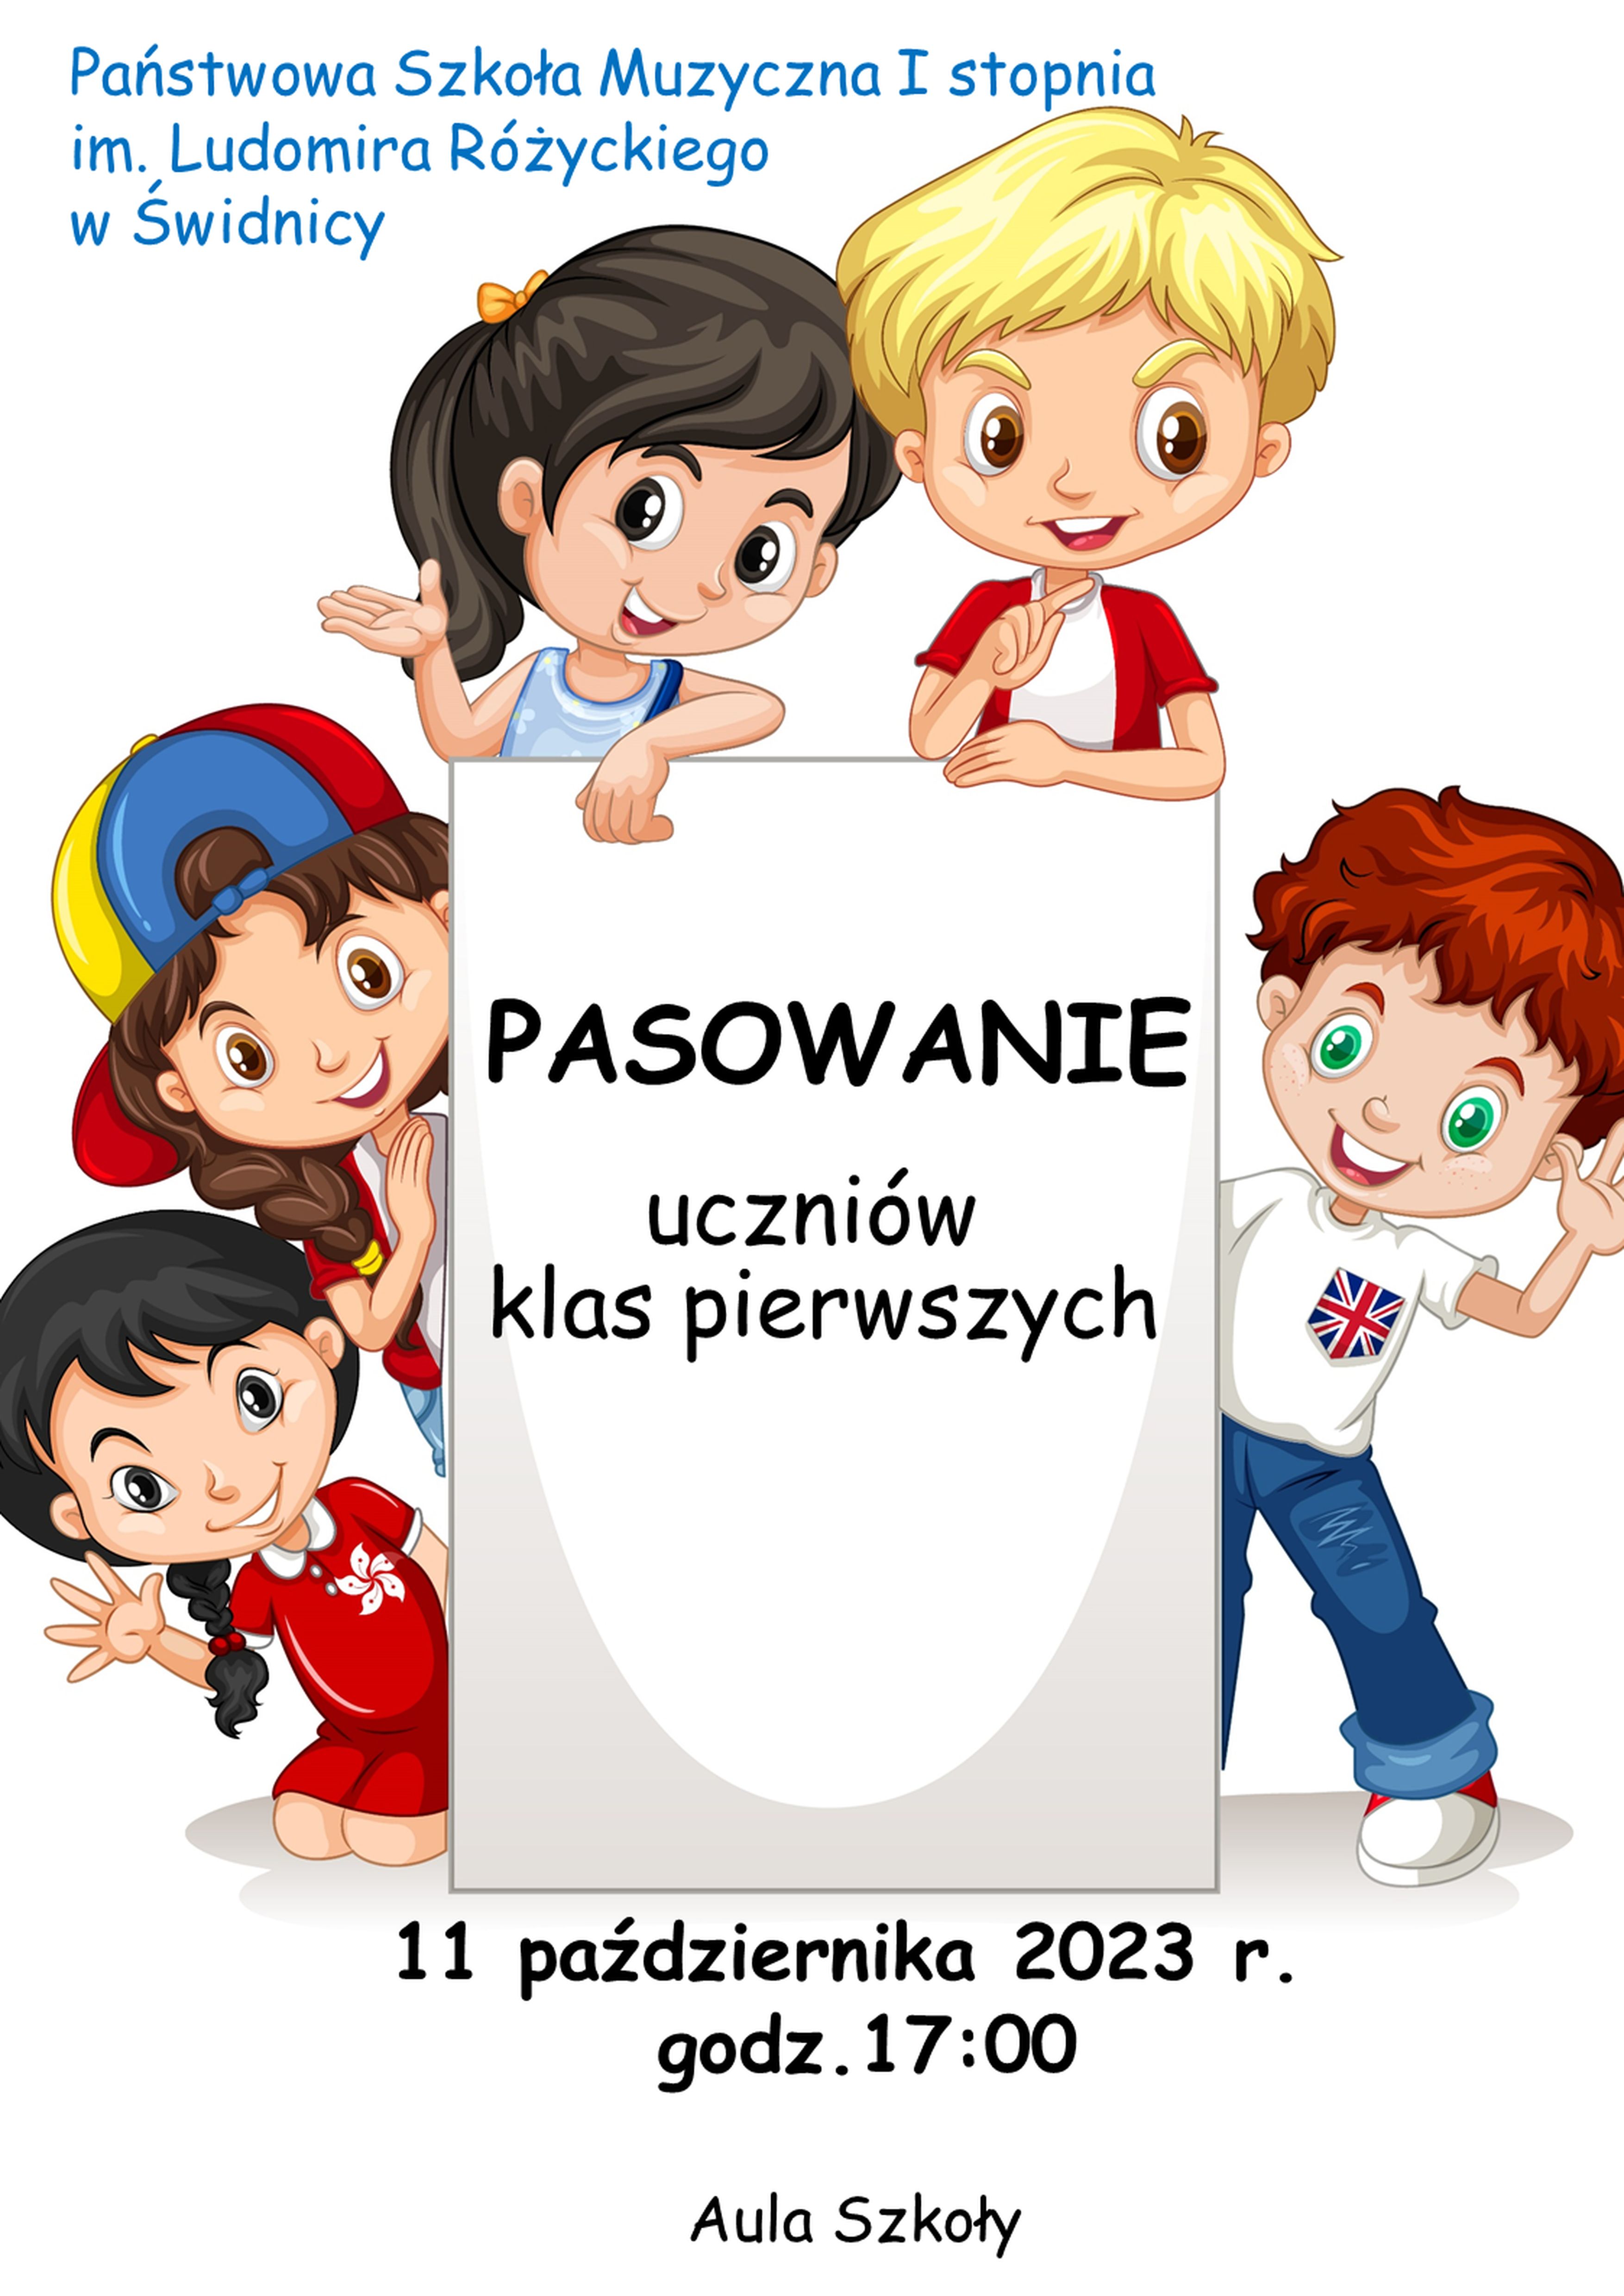 Plakat informujący o pasowaniu uczniów klas pierwszych 11 października 2023 w PSM w Świdnicy . W tle uśmiechnięte dzieci trzymające po środku kartkę na której zawarte są informacje na temat wydarzenia.